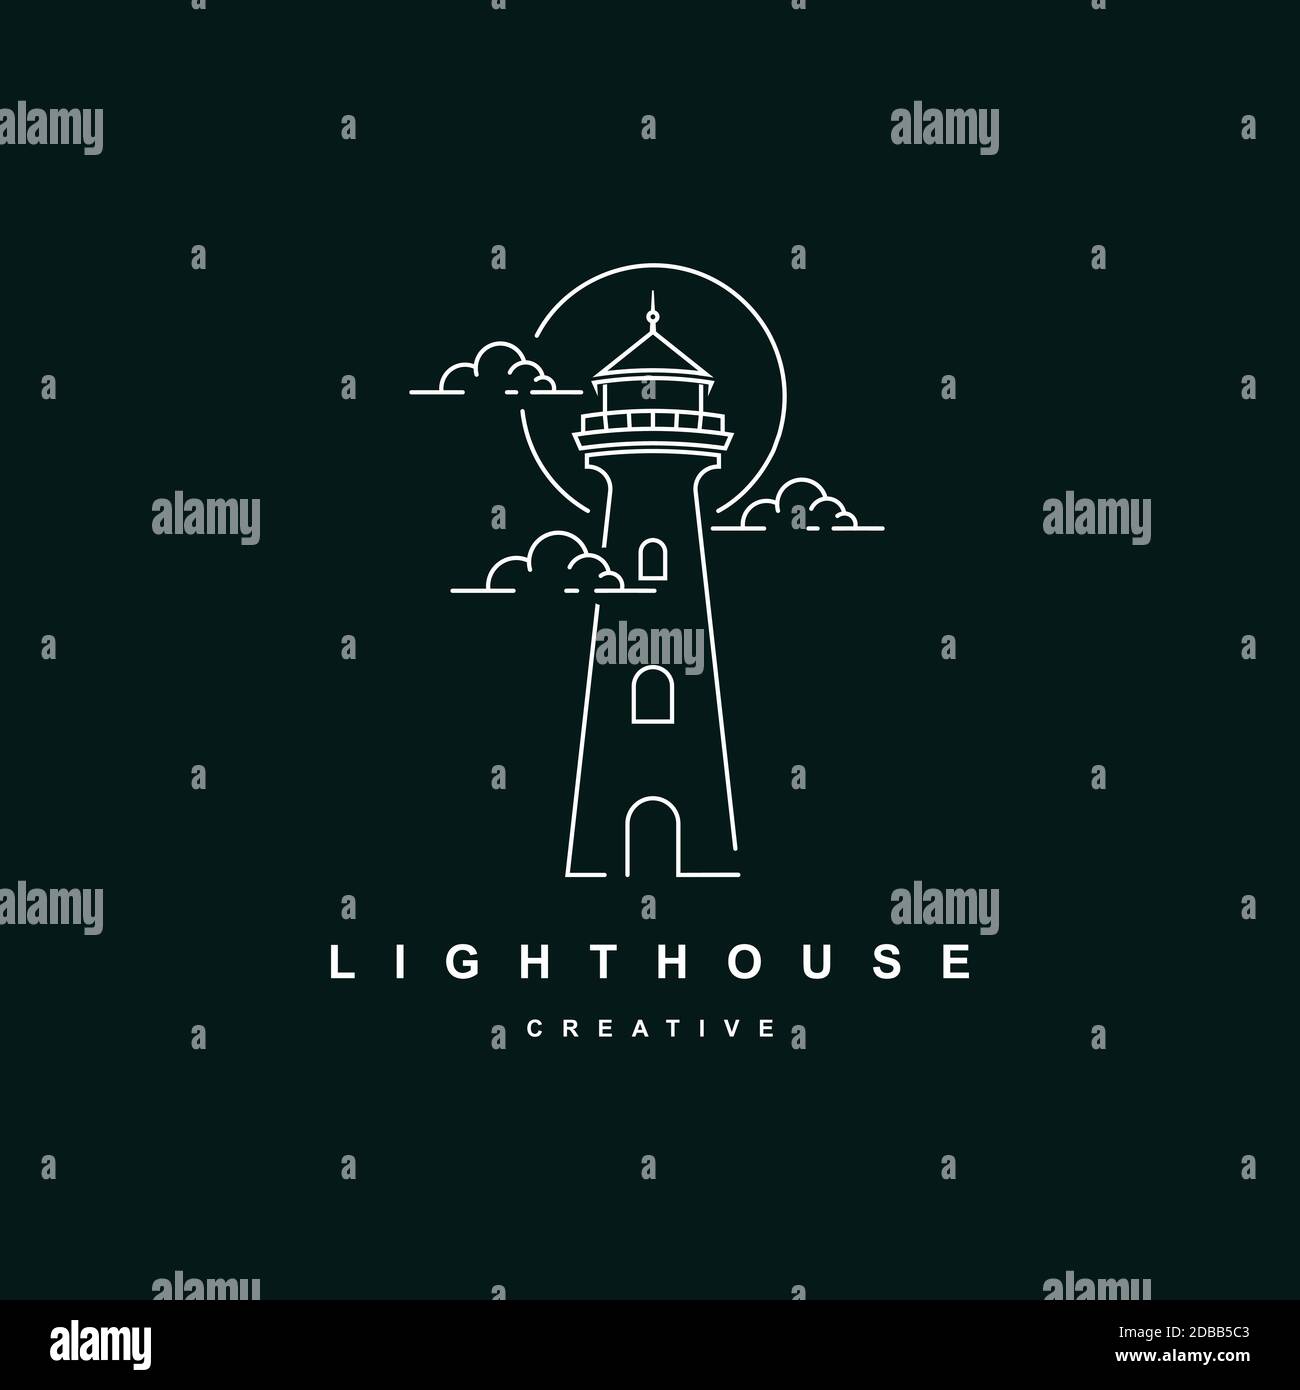 Lighthouse logo design vector template.Beacon symbol illustration Stock Vector